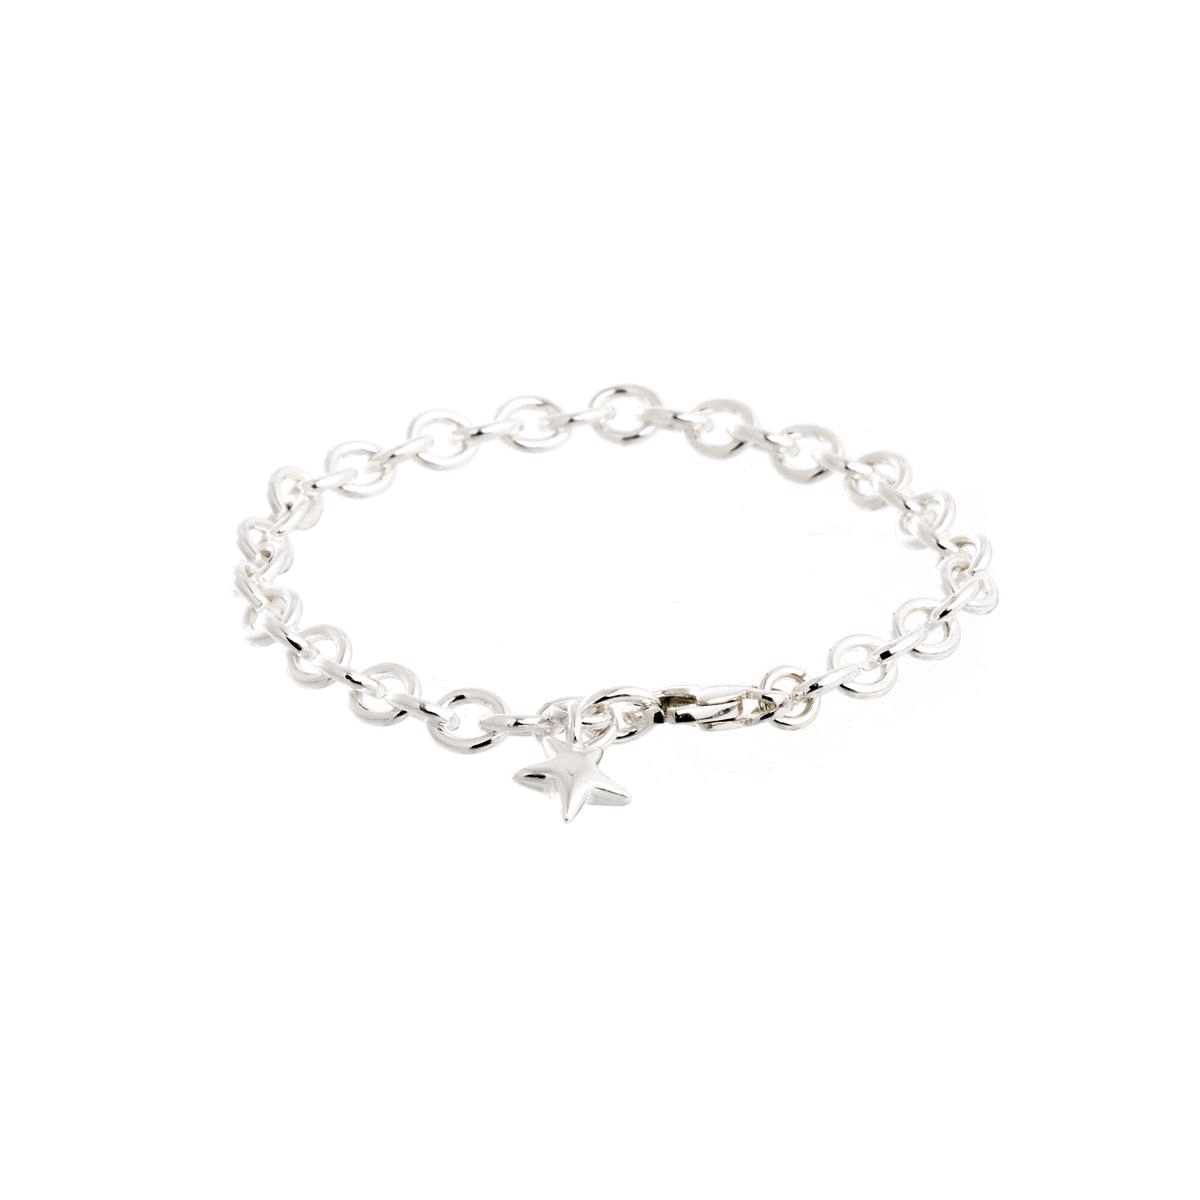 Adjustable Solid Silver Charm Bracelet for Girls